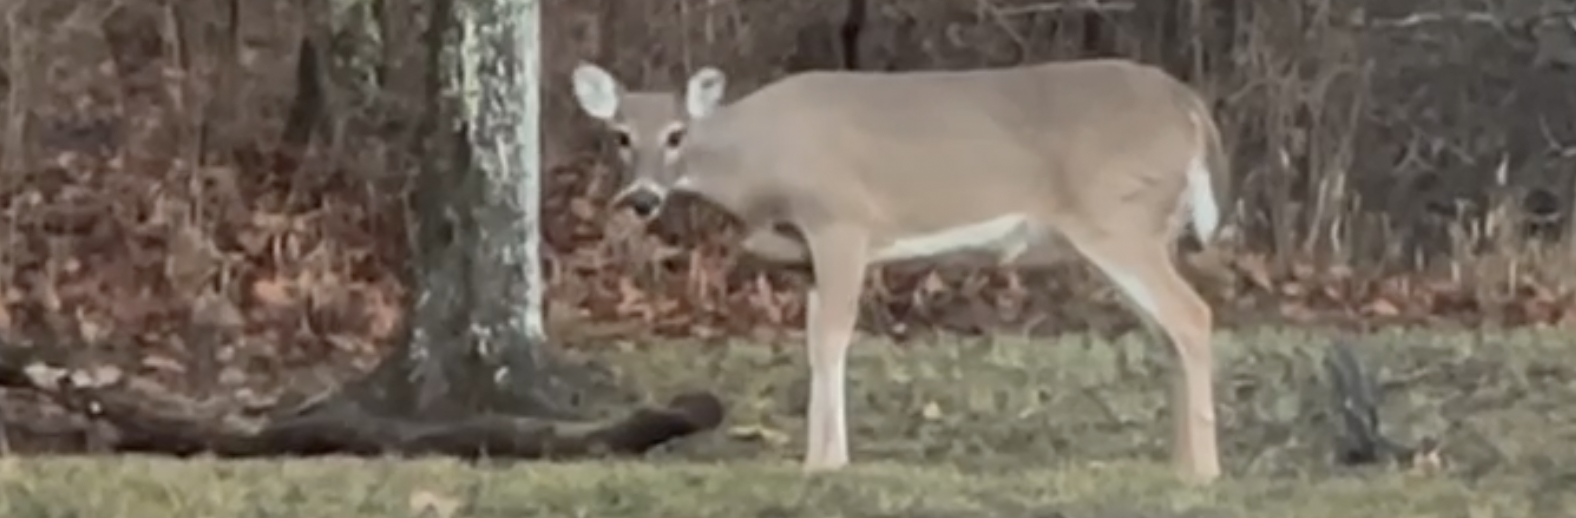 Still from video of deer.